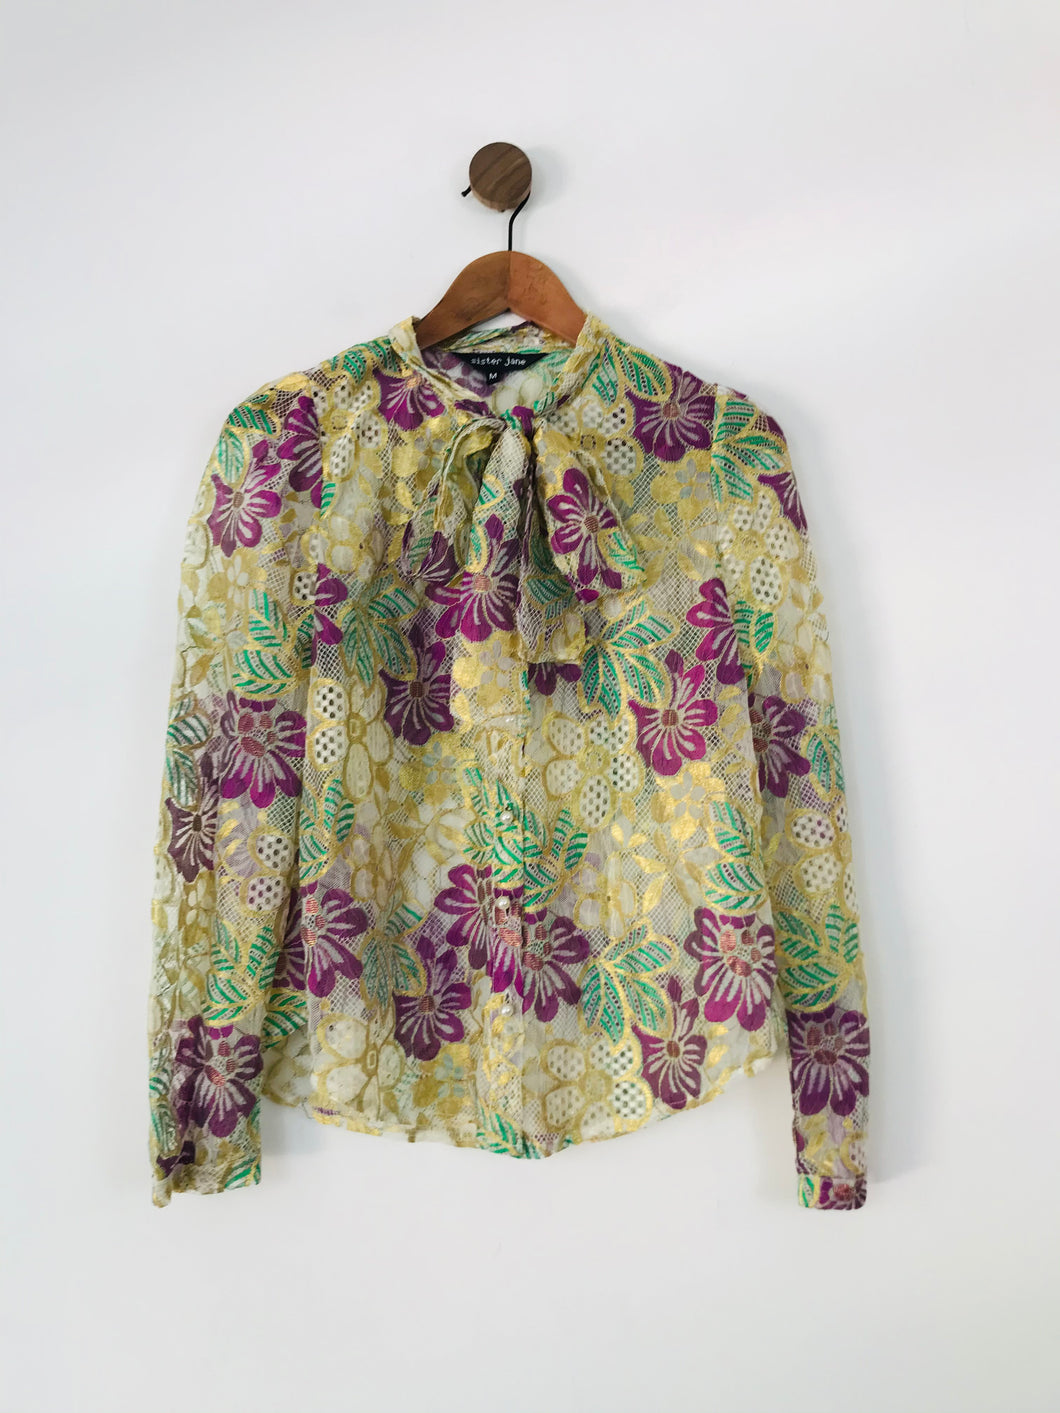 Sister Jane Women's Floral Lace Tie Blouse | M UK10 | Multicolour